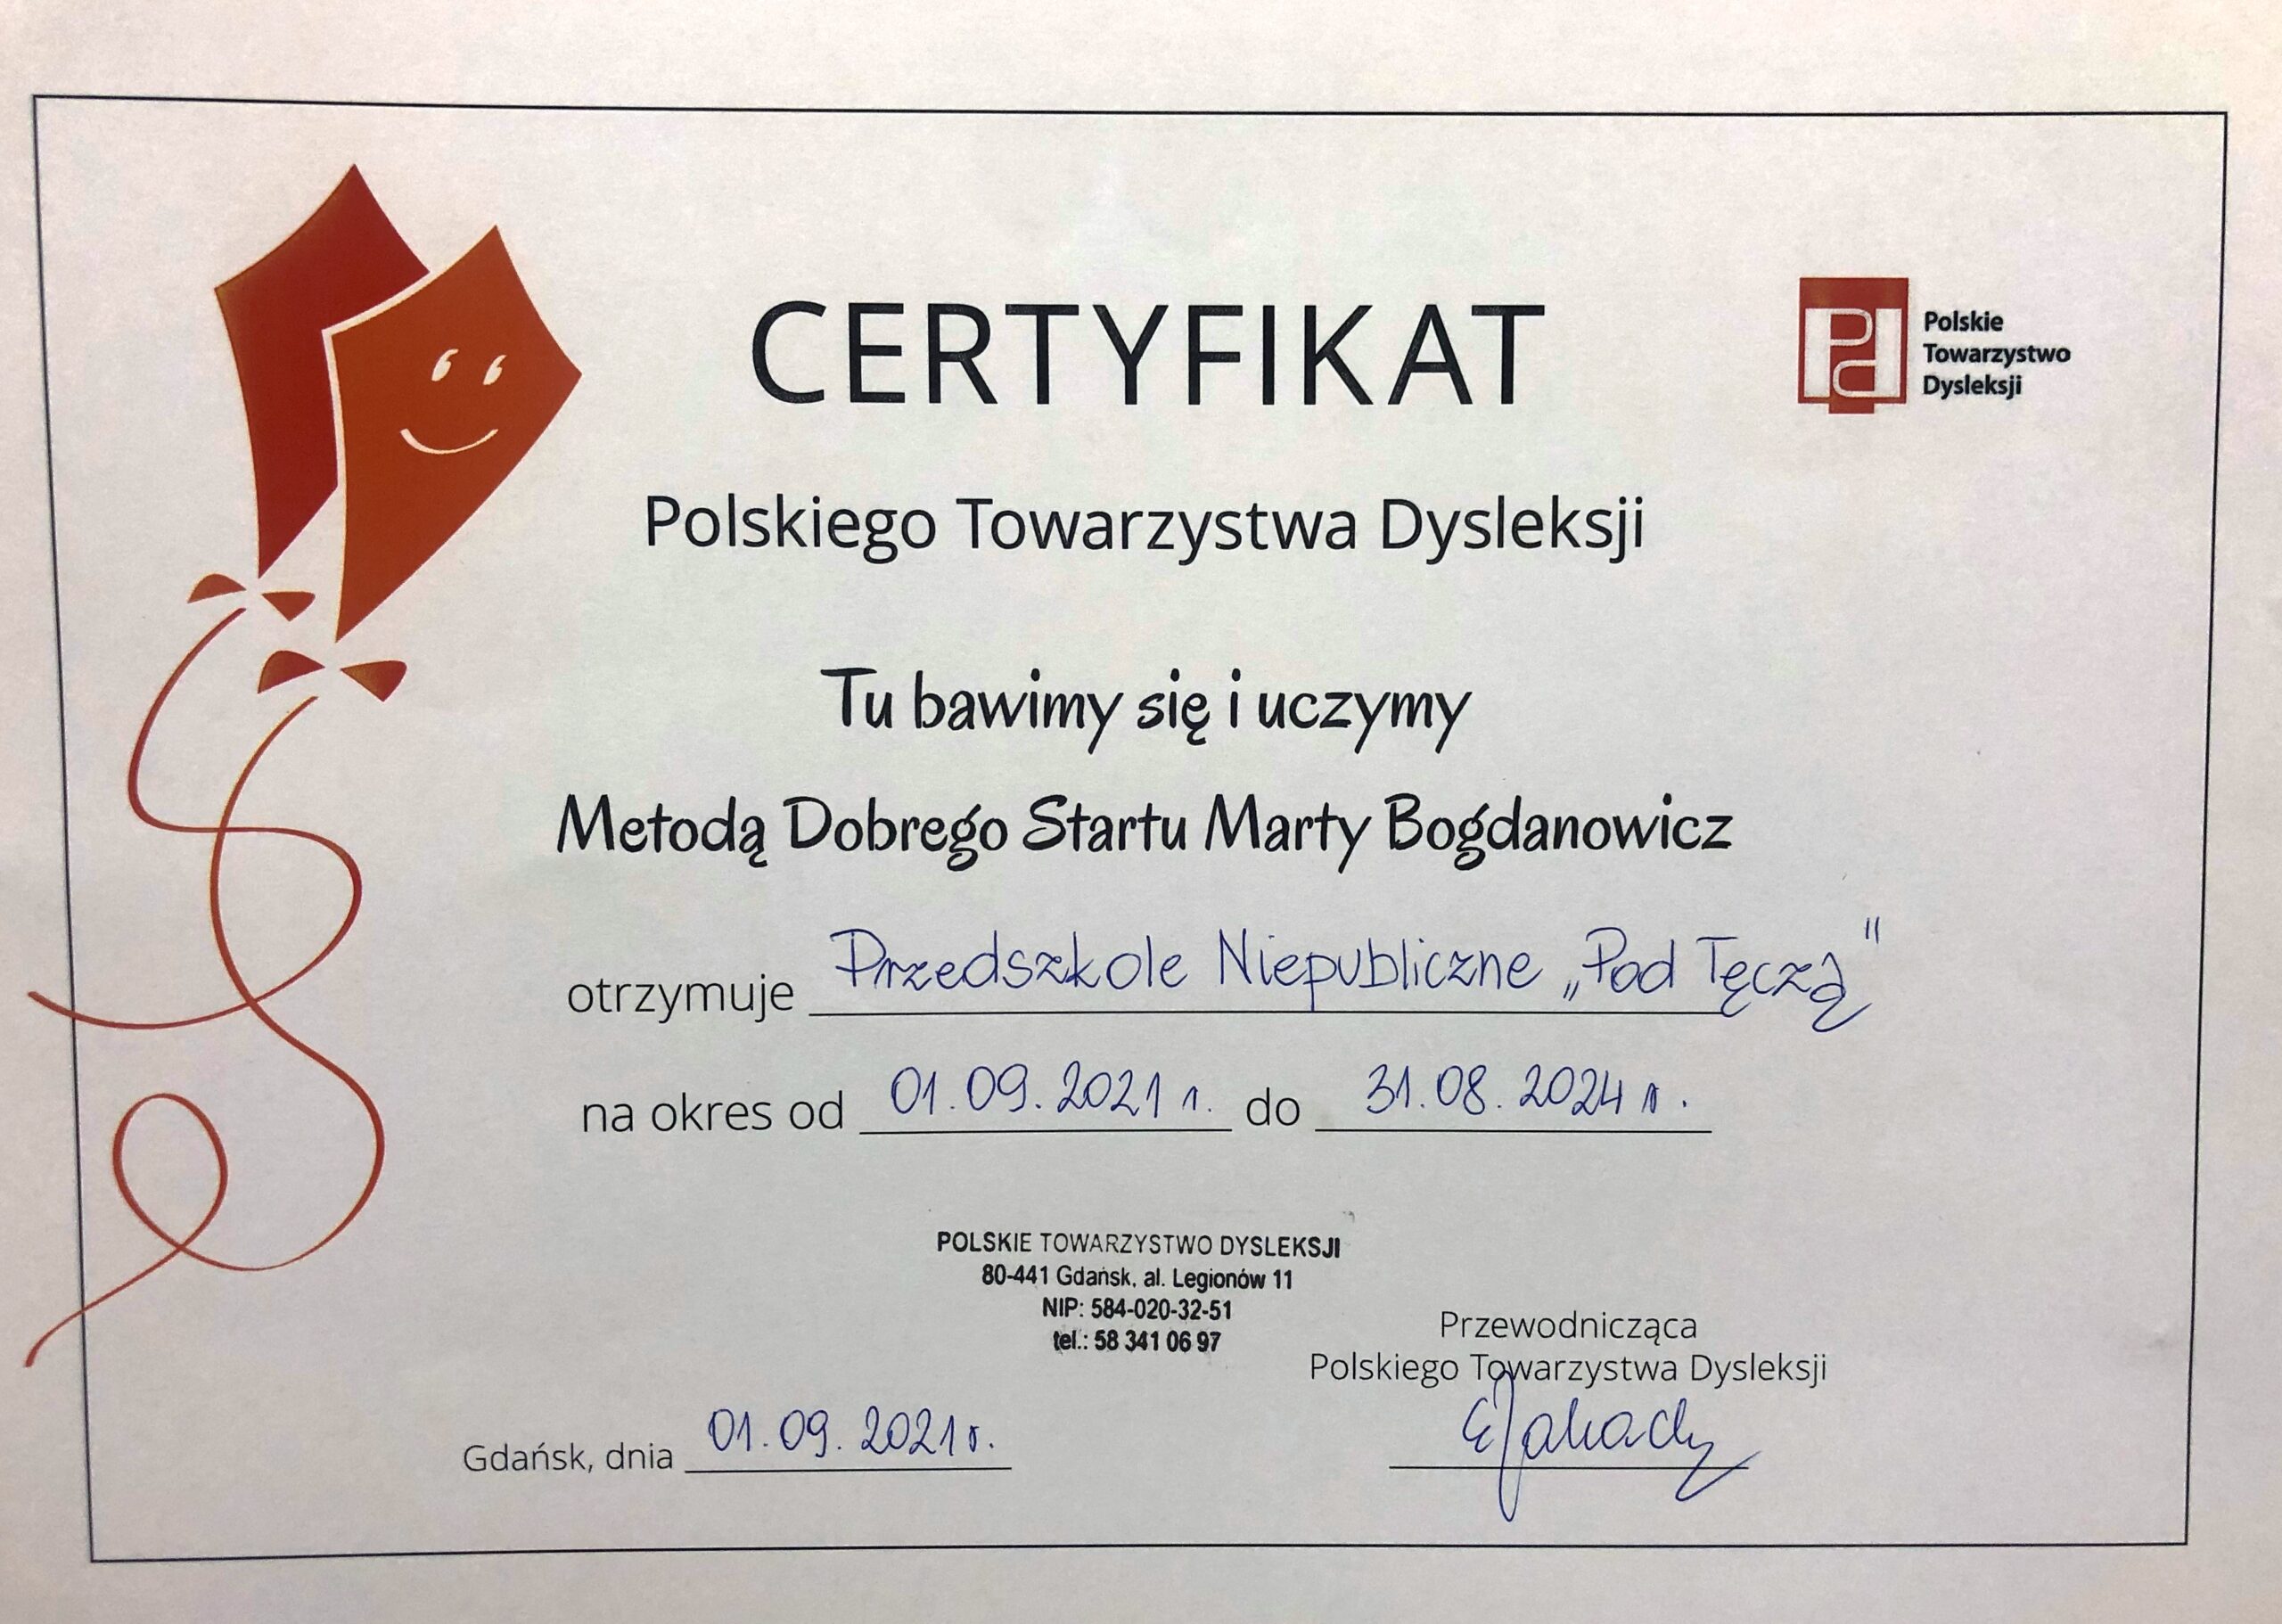 Certyfikat Polskiego Towarzystwa Dysleksji 2021 - skan